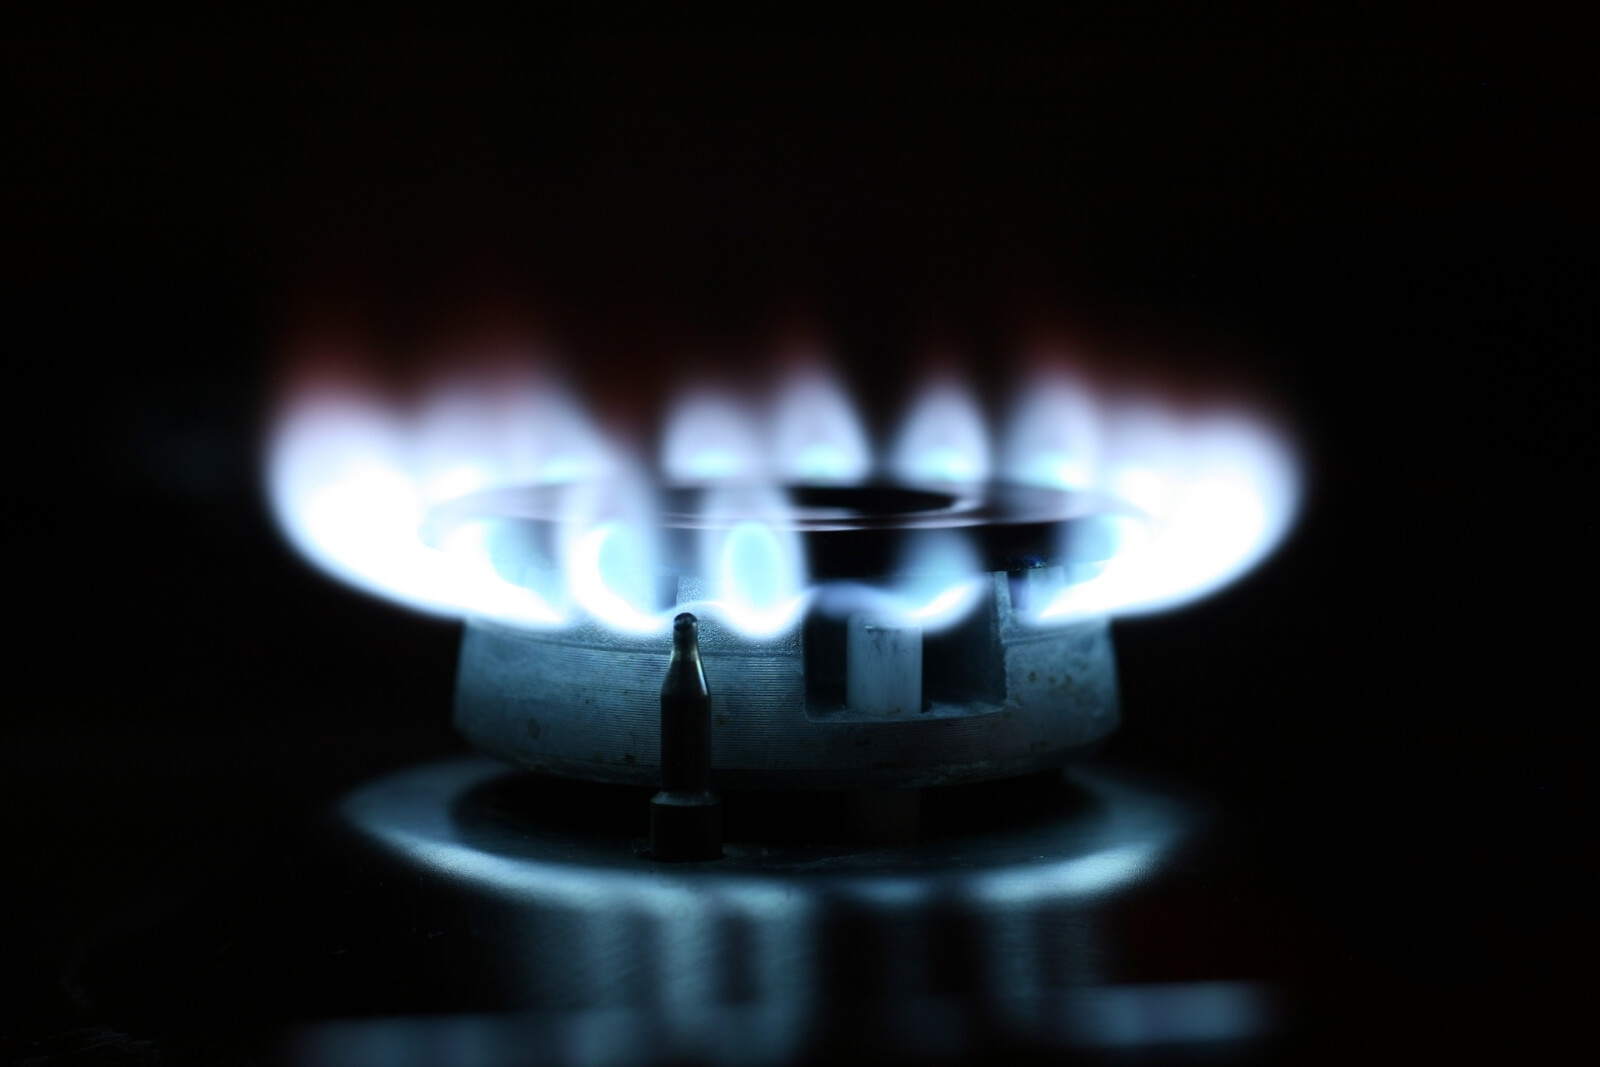 Gaspreisvergleich: Jetzt Gaspreise vergleichen und Kosten senken!